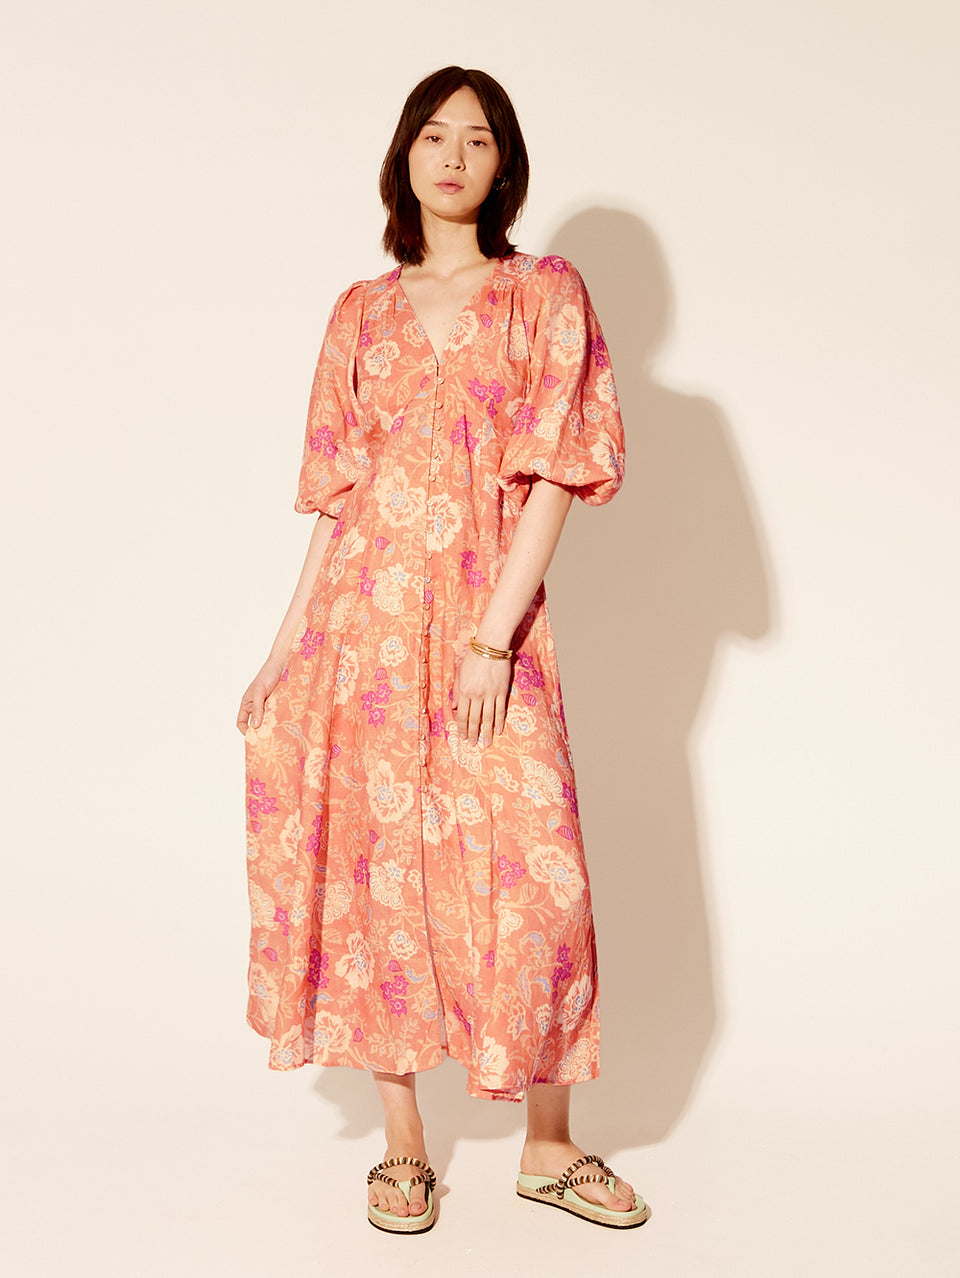 Rosa Maxi Dress KIVARI | Model wears pink floral dress